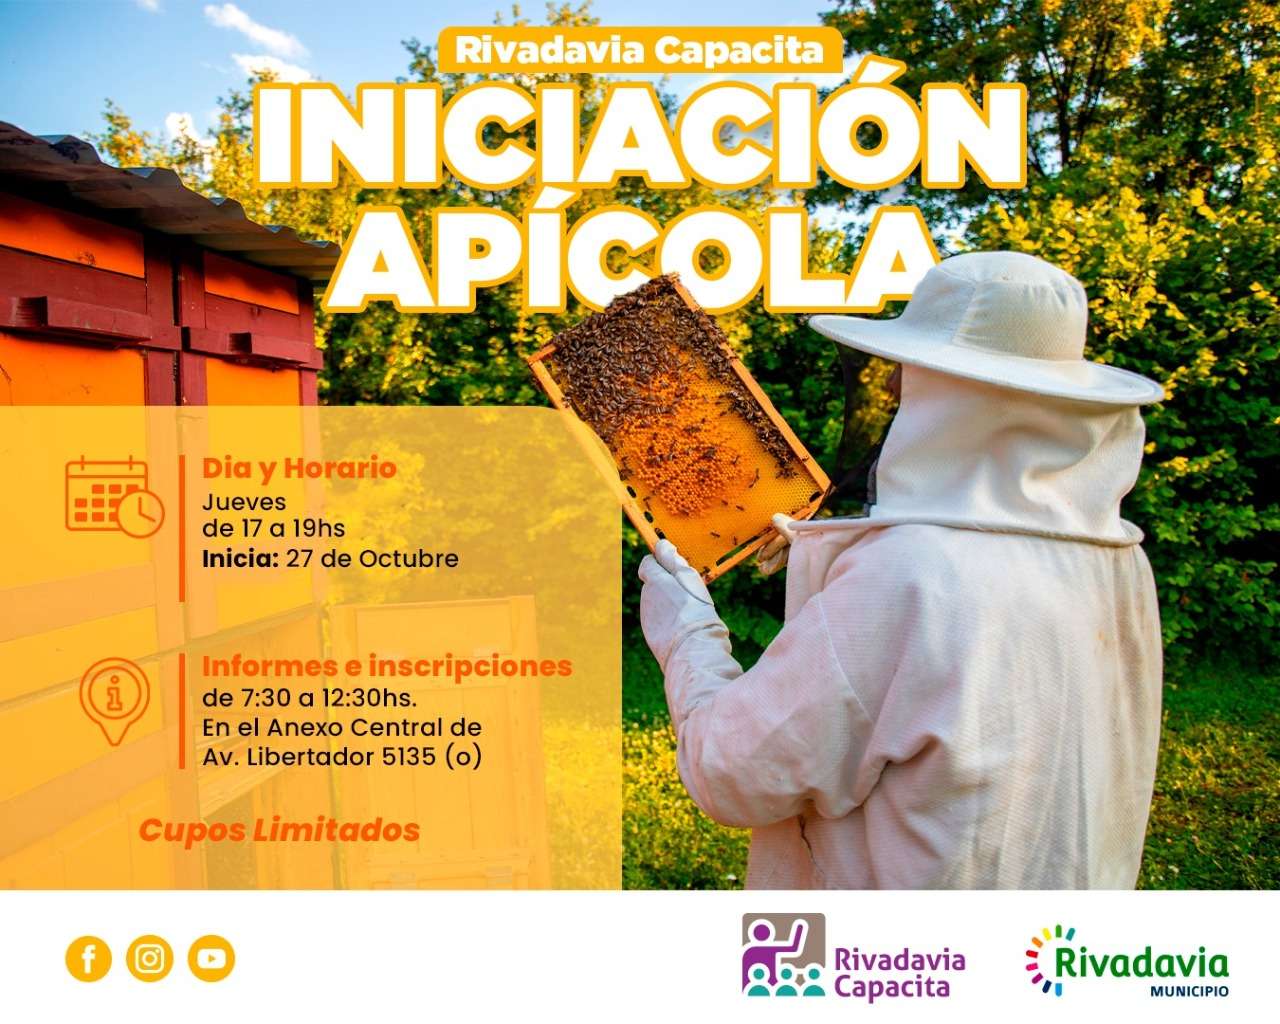 La Municipalidad de Rivadavia lanza un nuevo curso de Iniciación Apícola